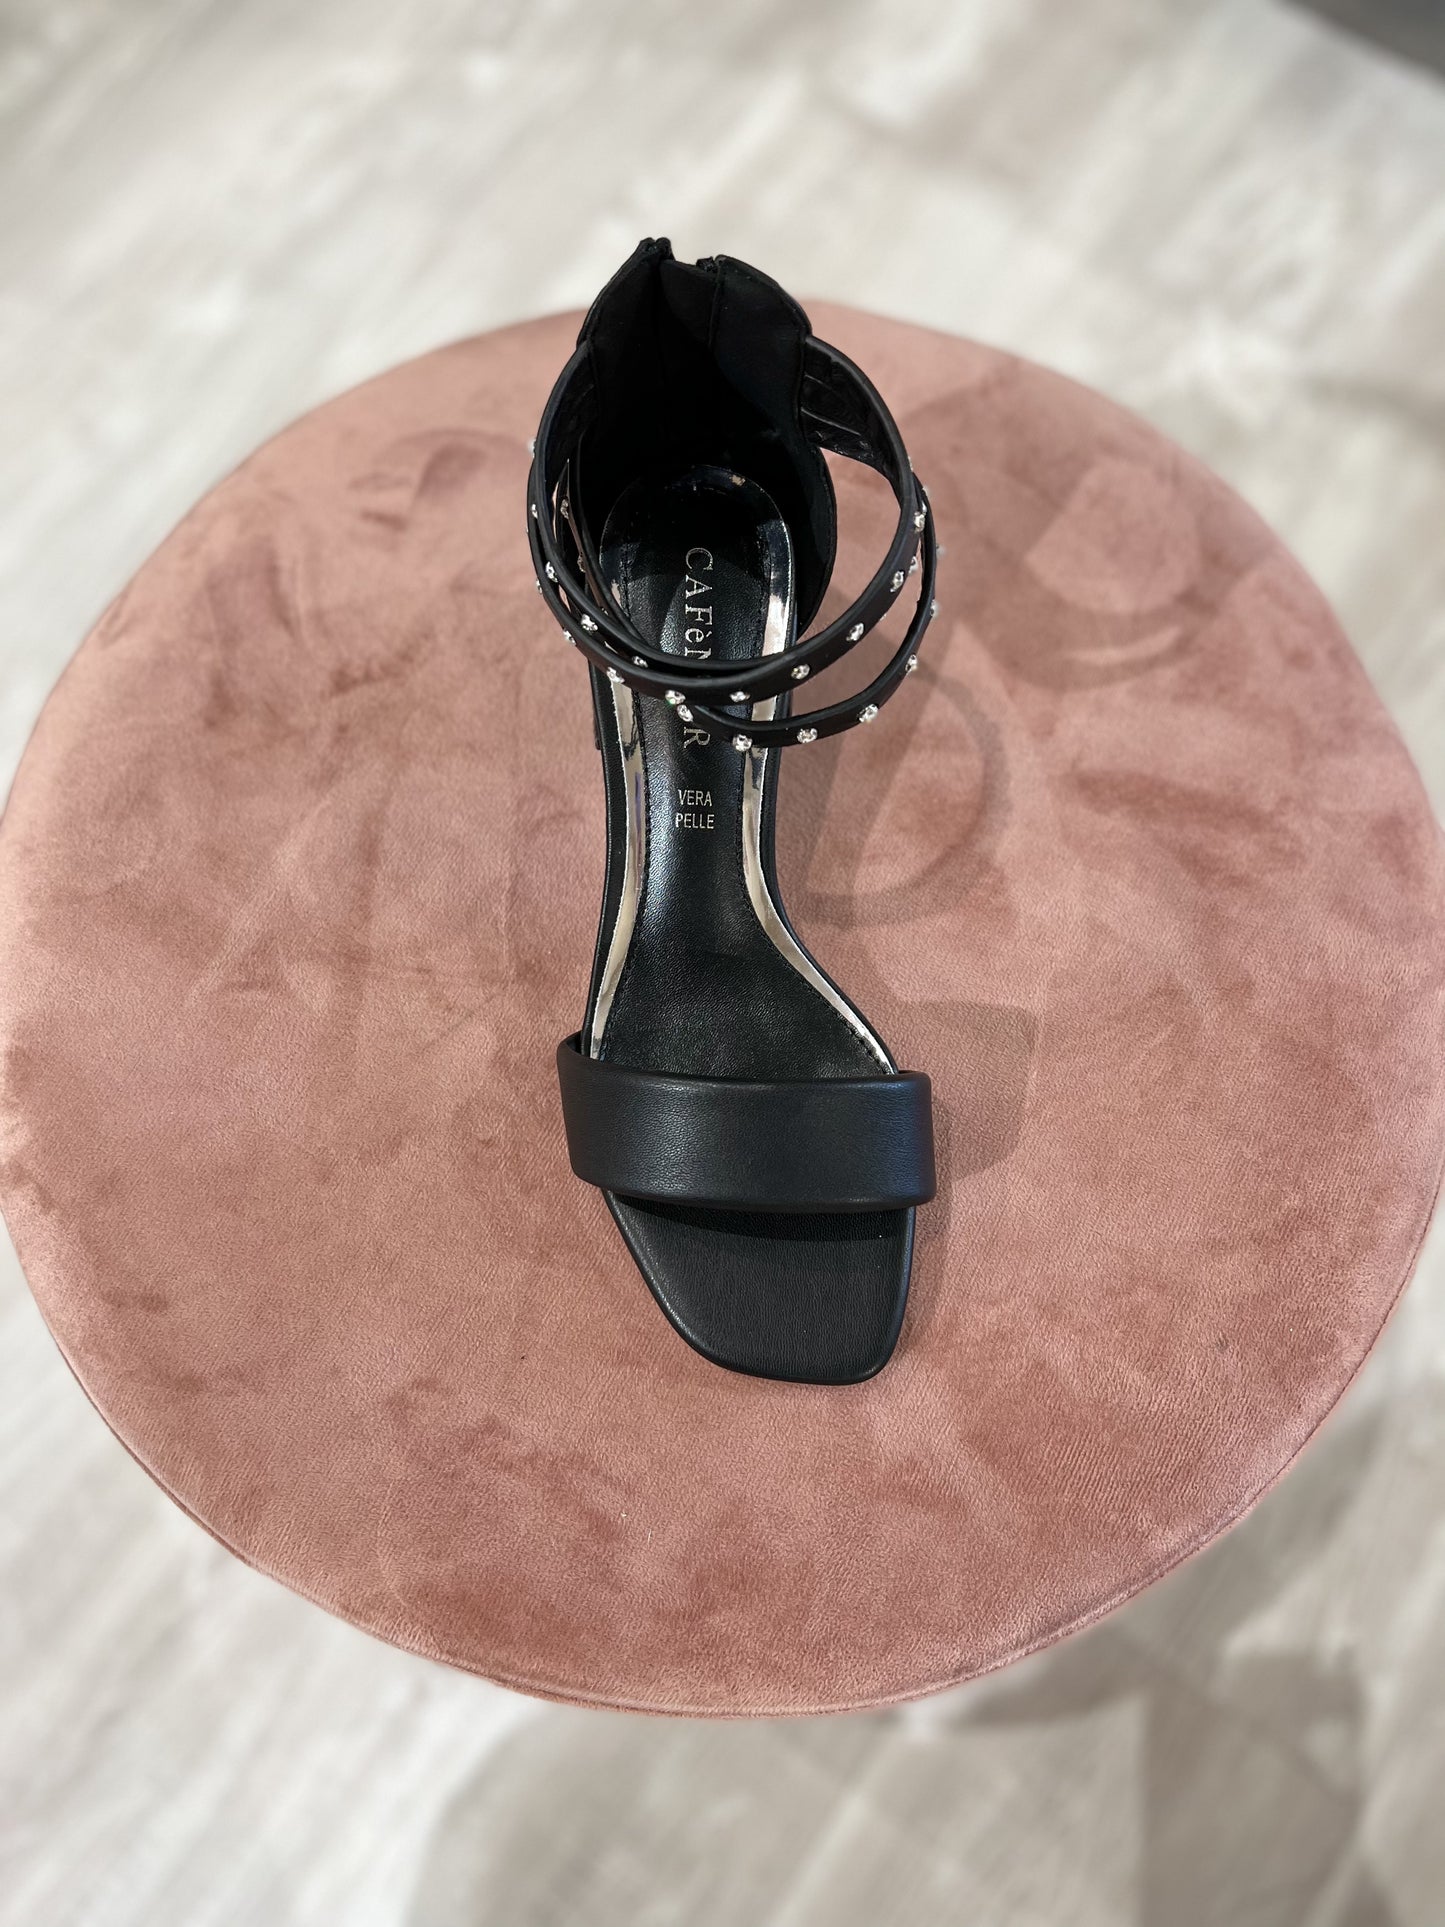 Sandalo cavigliera strass nero LB9080